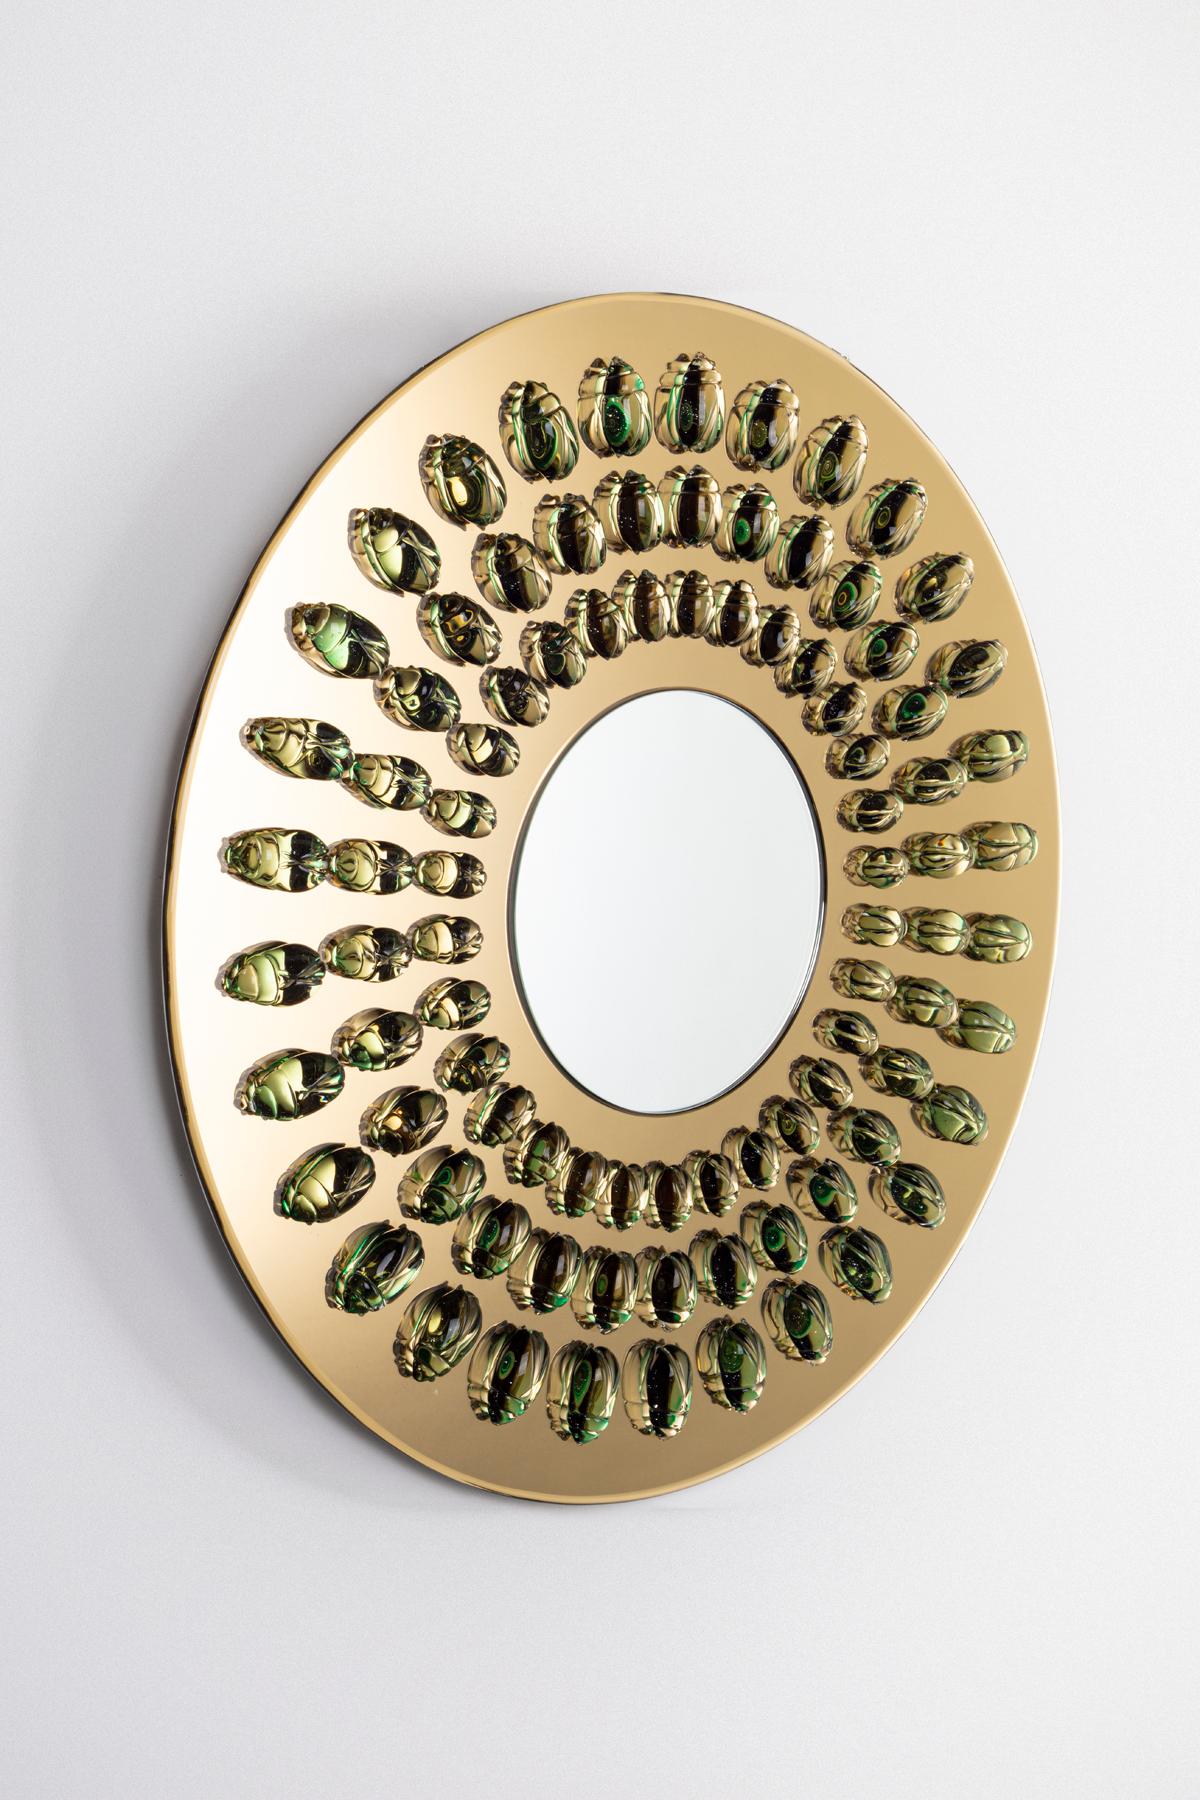 L'agencement géométrique des scarabées en verre sur
ce miroir arrondi crée de l'ordre dans la vie des insectes
exosquelettes sinueux. L'échelle croissante qui se déplace
vers l'extérieur du centre font allusion à l'étape délicate
de la